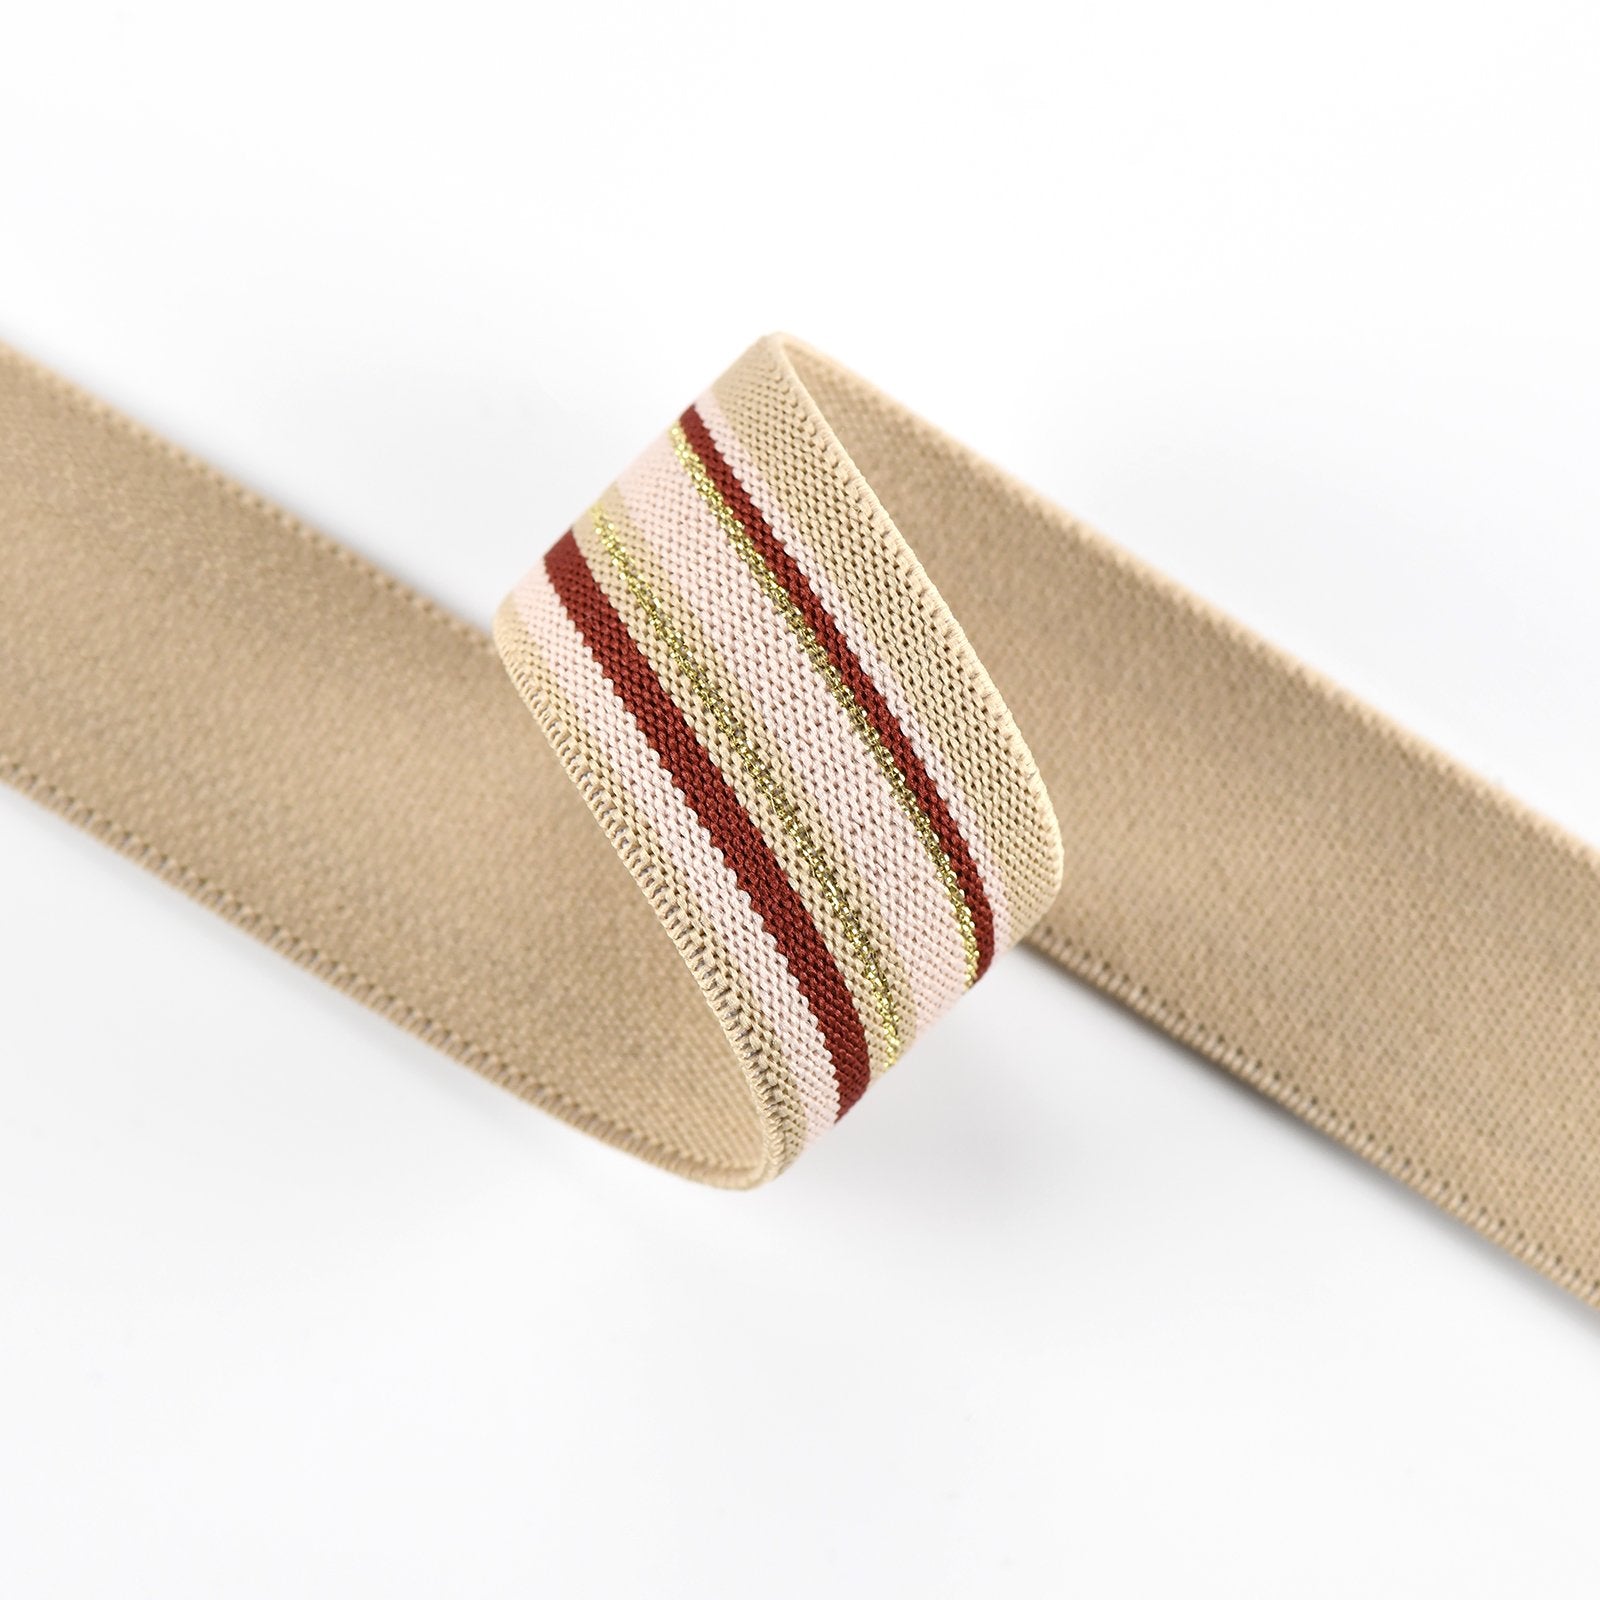 1 1/4 inch 30mm Gold Glitter Khaki and red Stripe elastic band- 1 yard